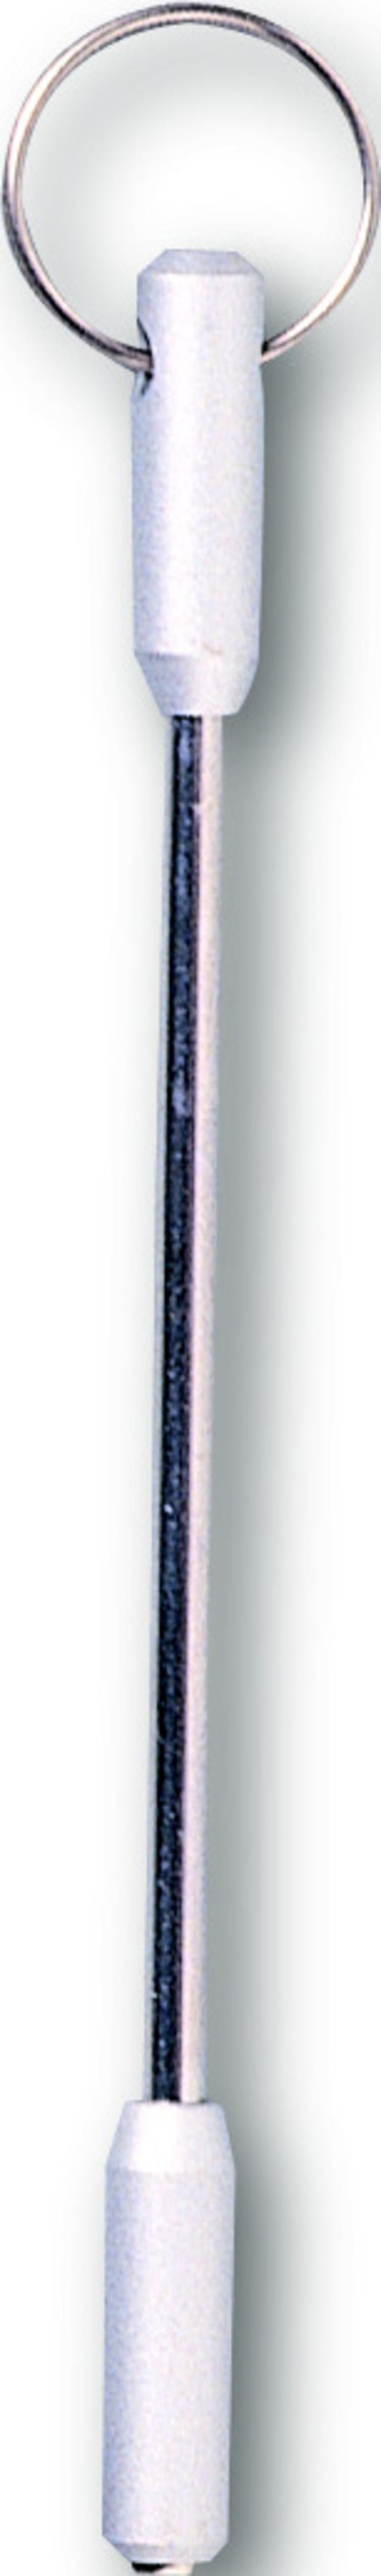 C&F Design 3-in-1 Nail Knot Pipe & Line Needle (CFA-11)